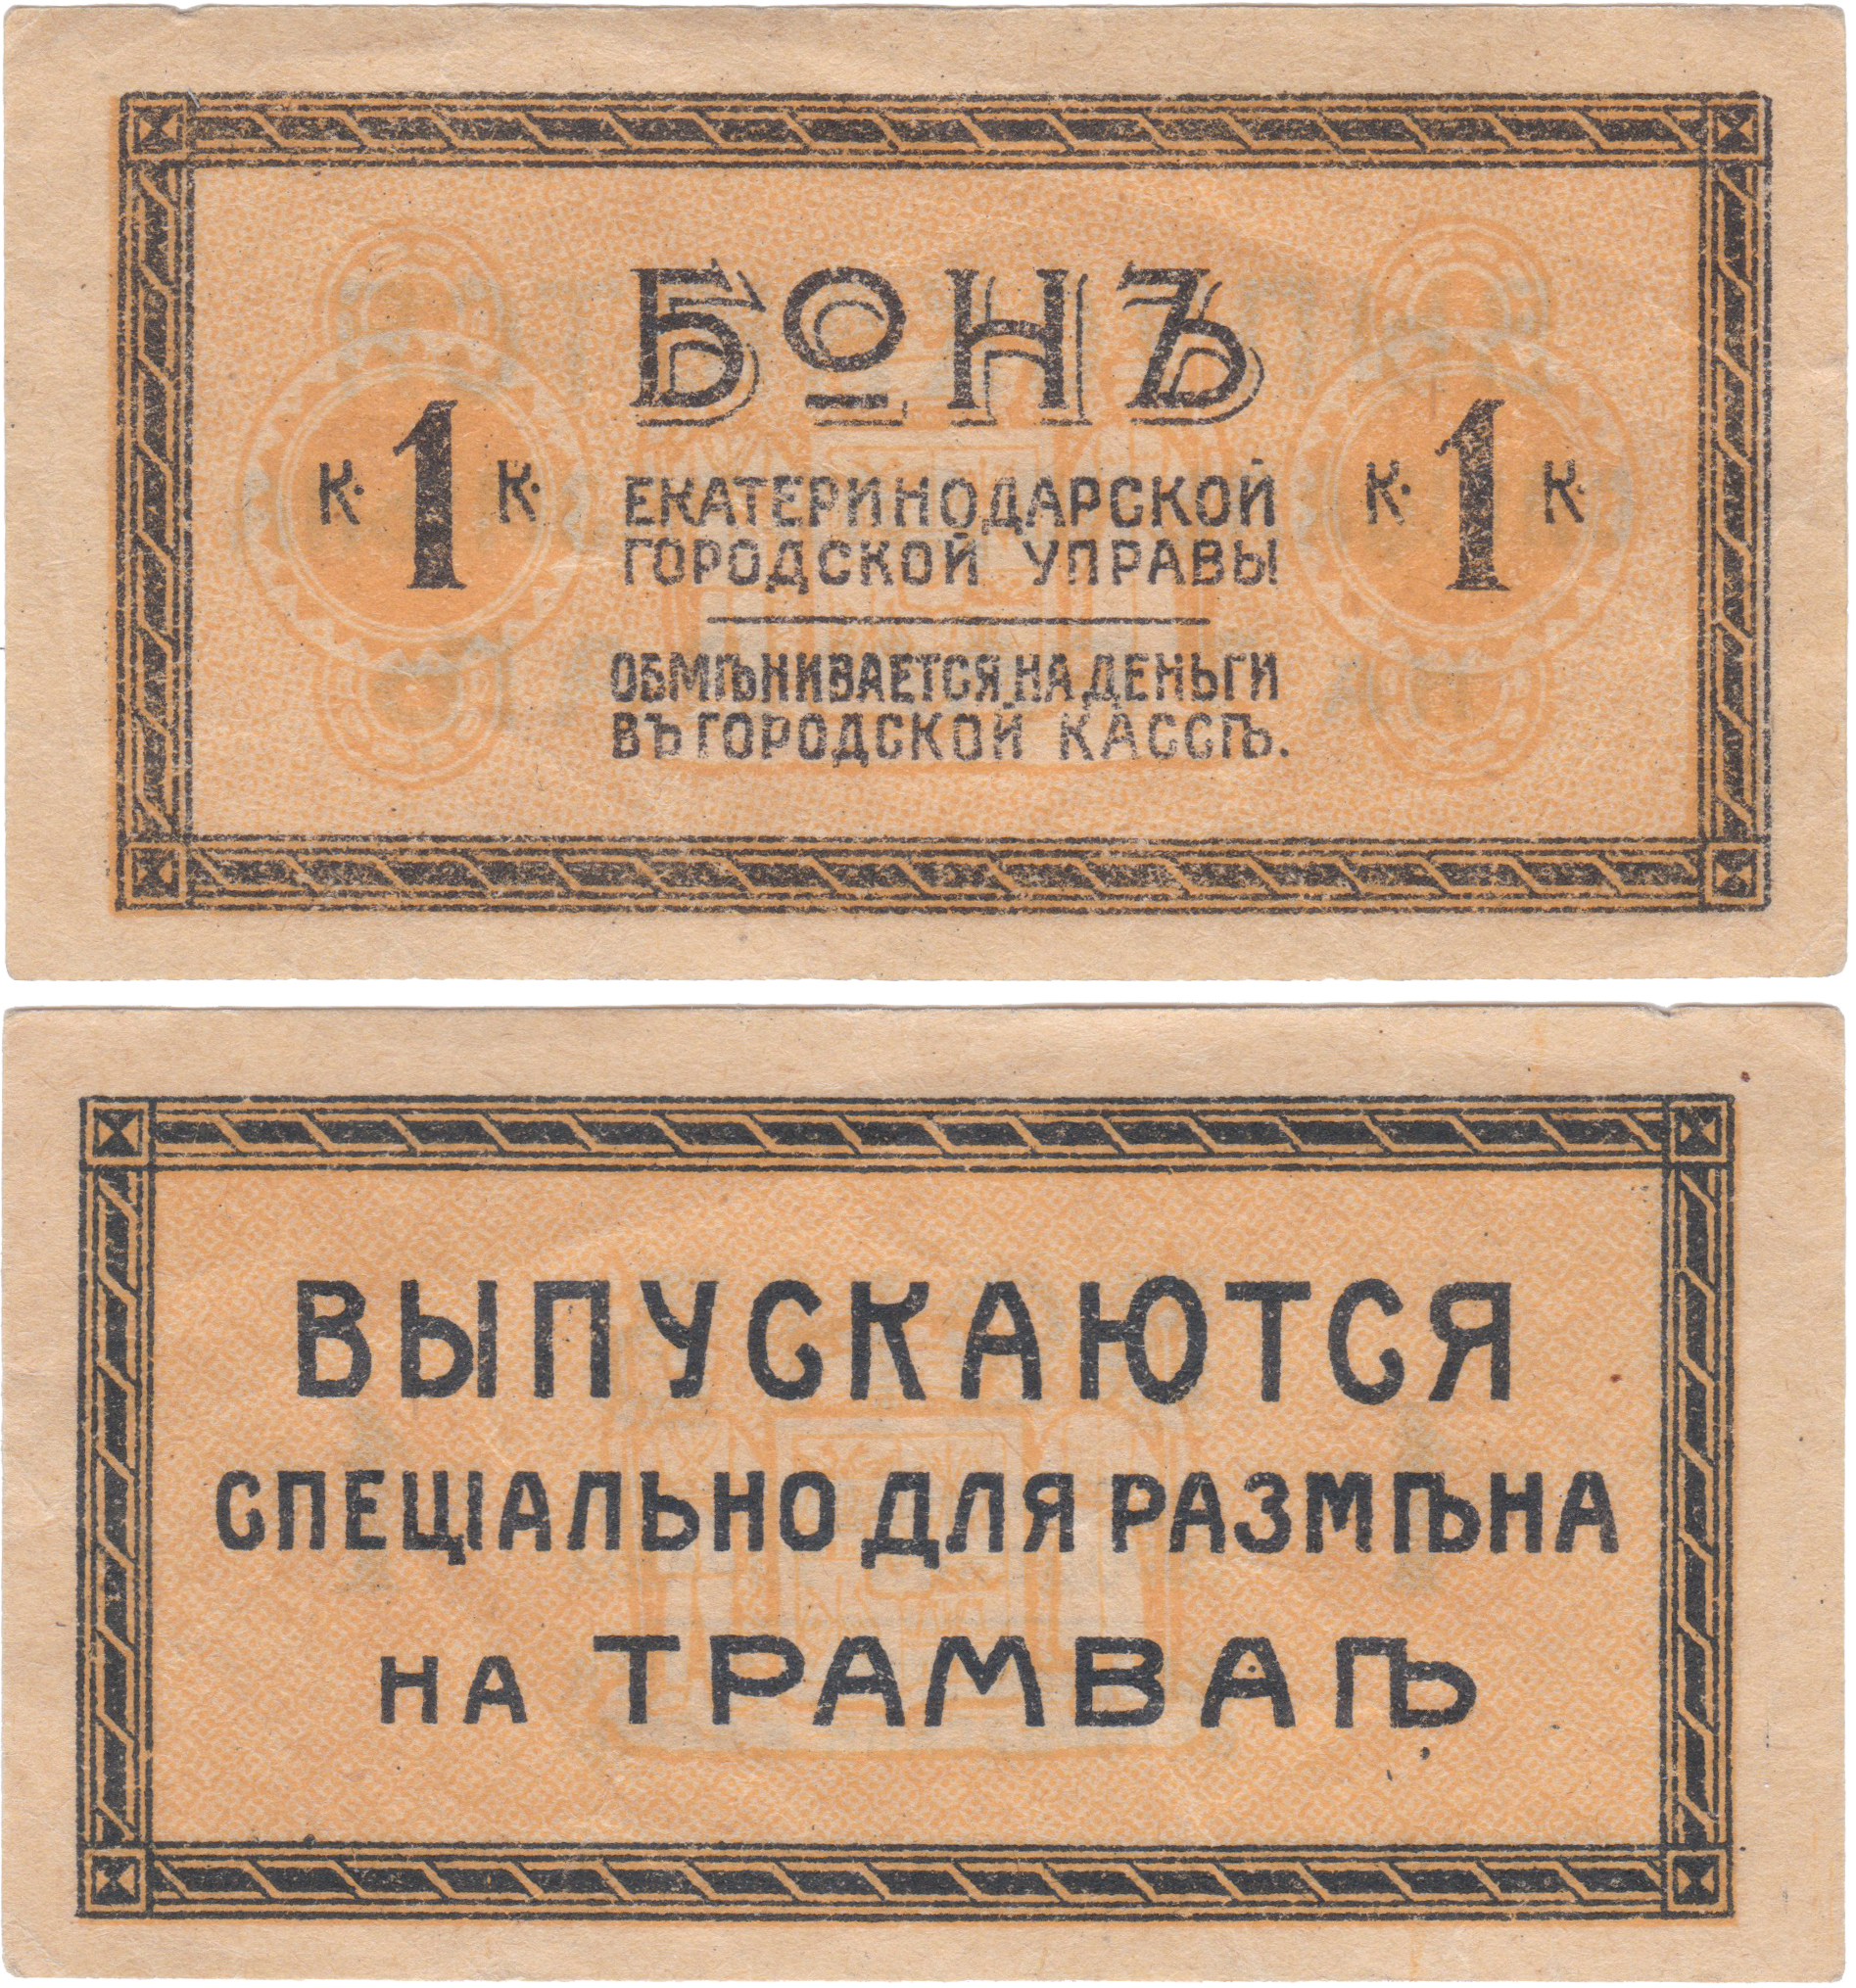 Бон 1 Копейка 1918 год. Екатеринодарская городская управа